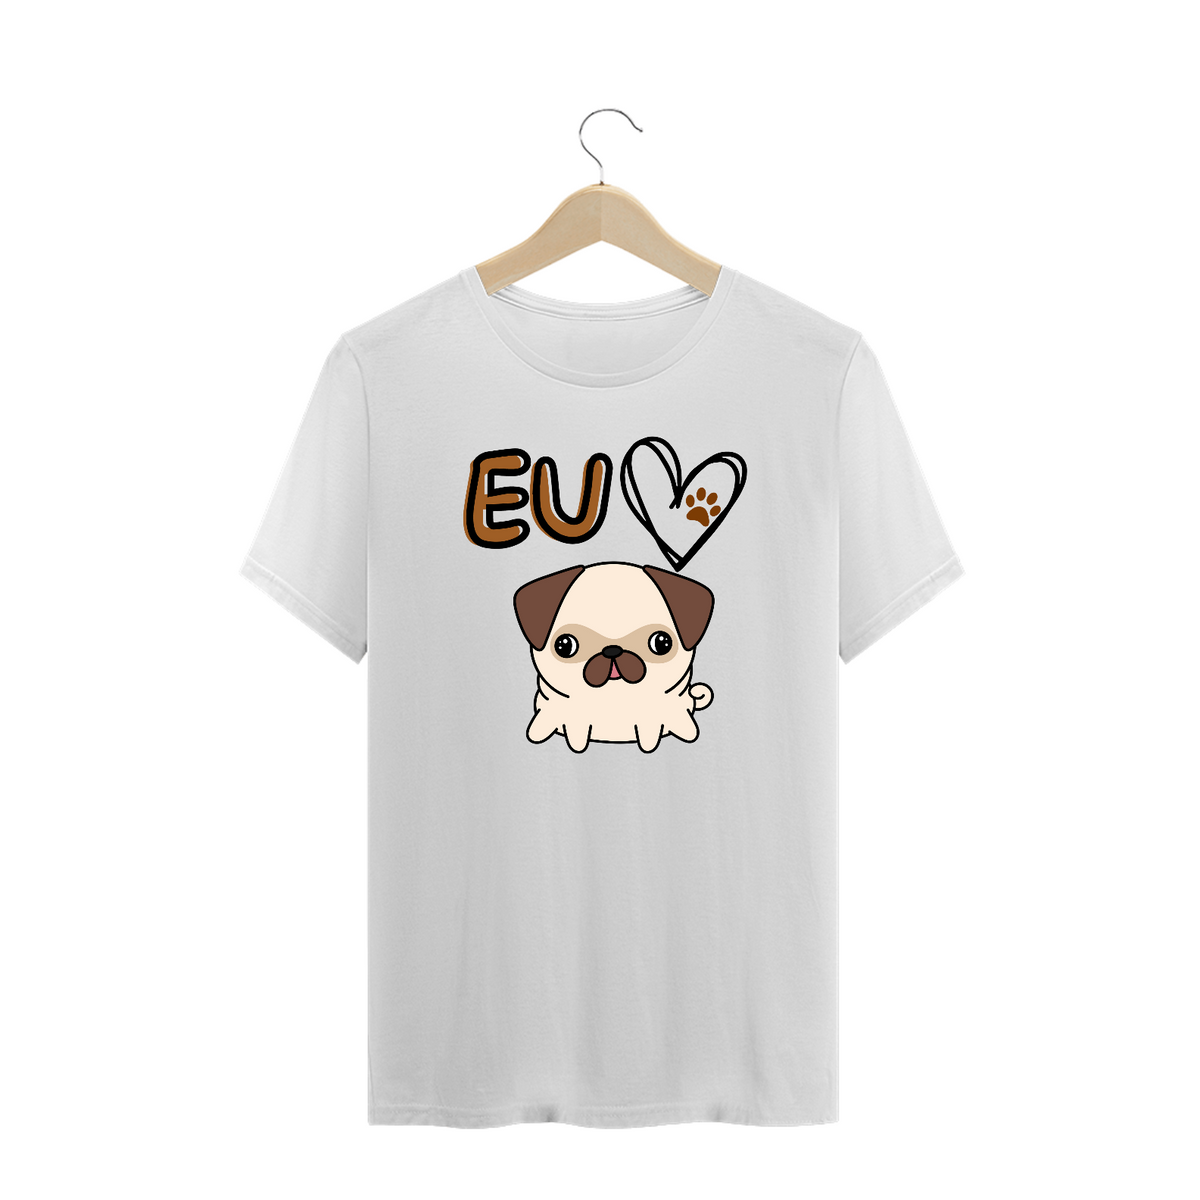 Nome do produto: Plus Size T-shirt eu amo dog - Cores claras